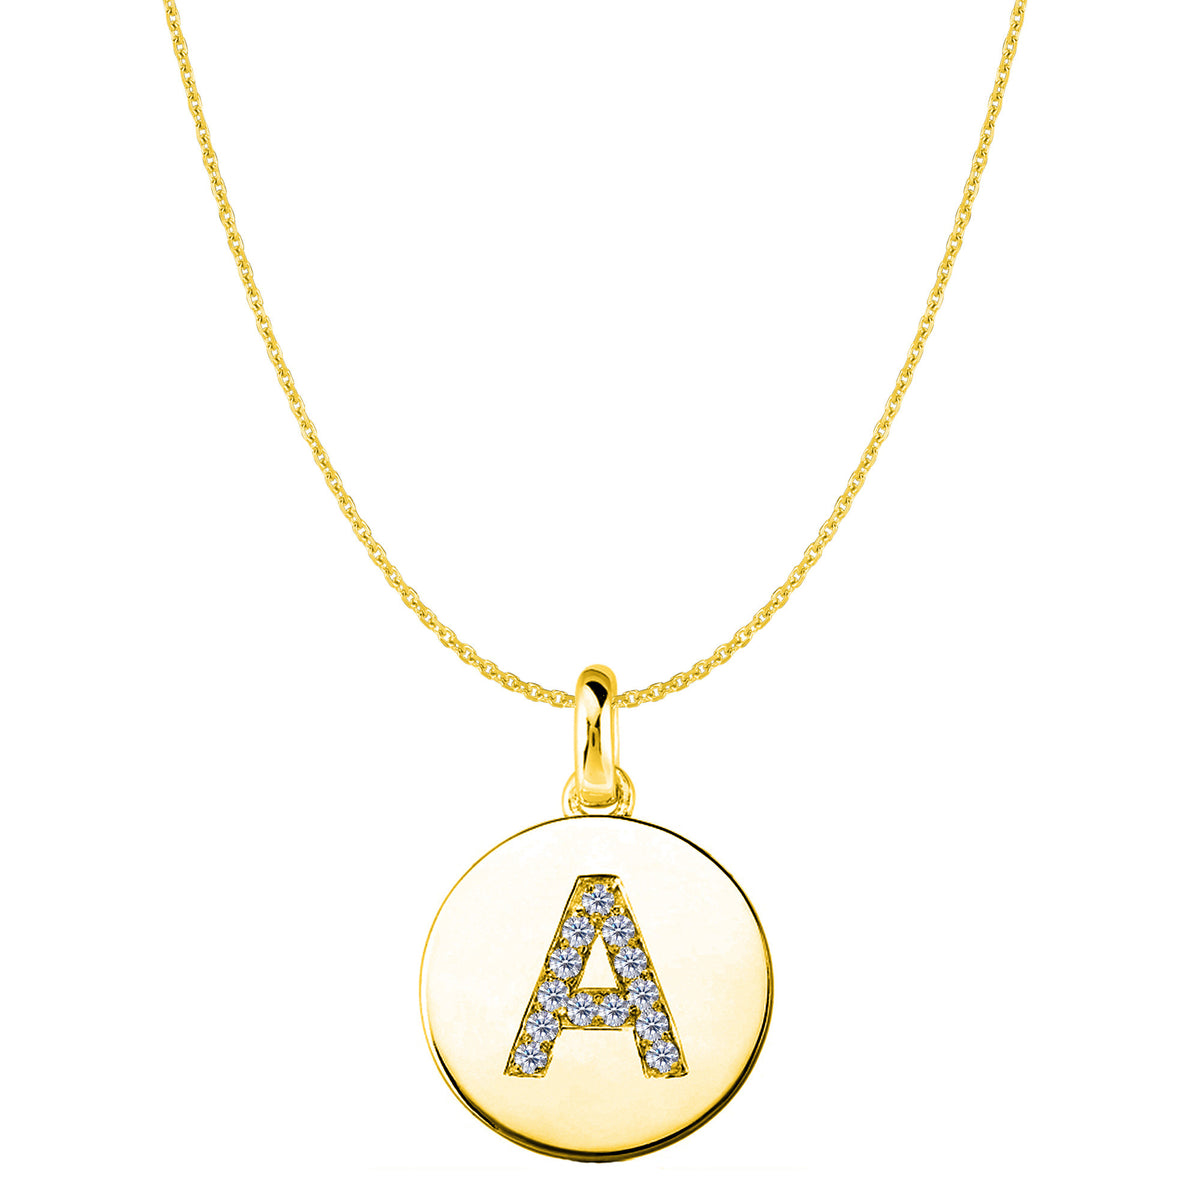 "A" Diamond Initial 14K gult guld diskhänge (0,13ct) fina designersmycken för män och kvinnor